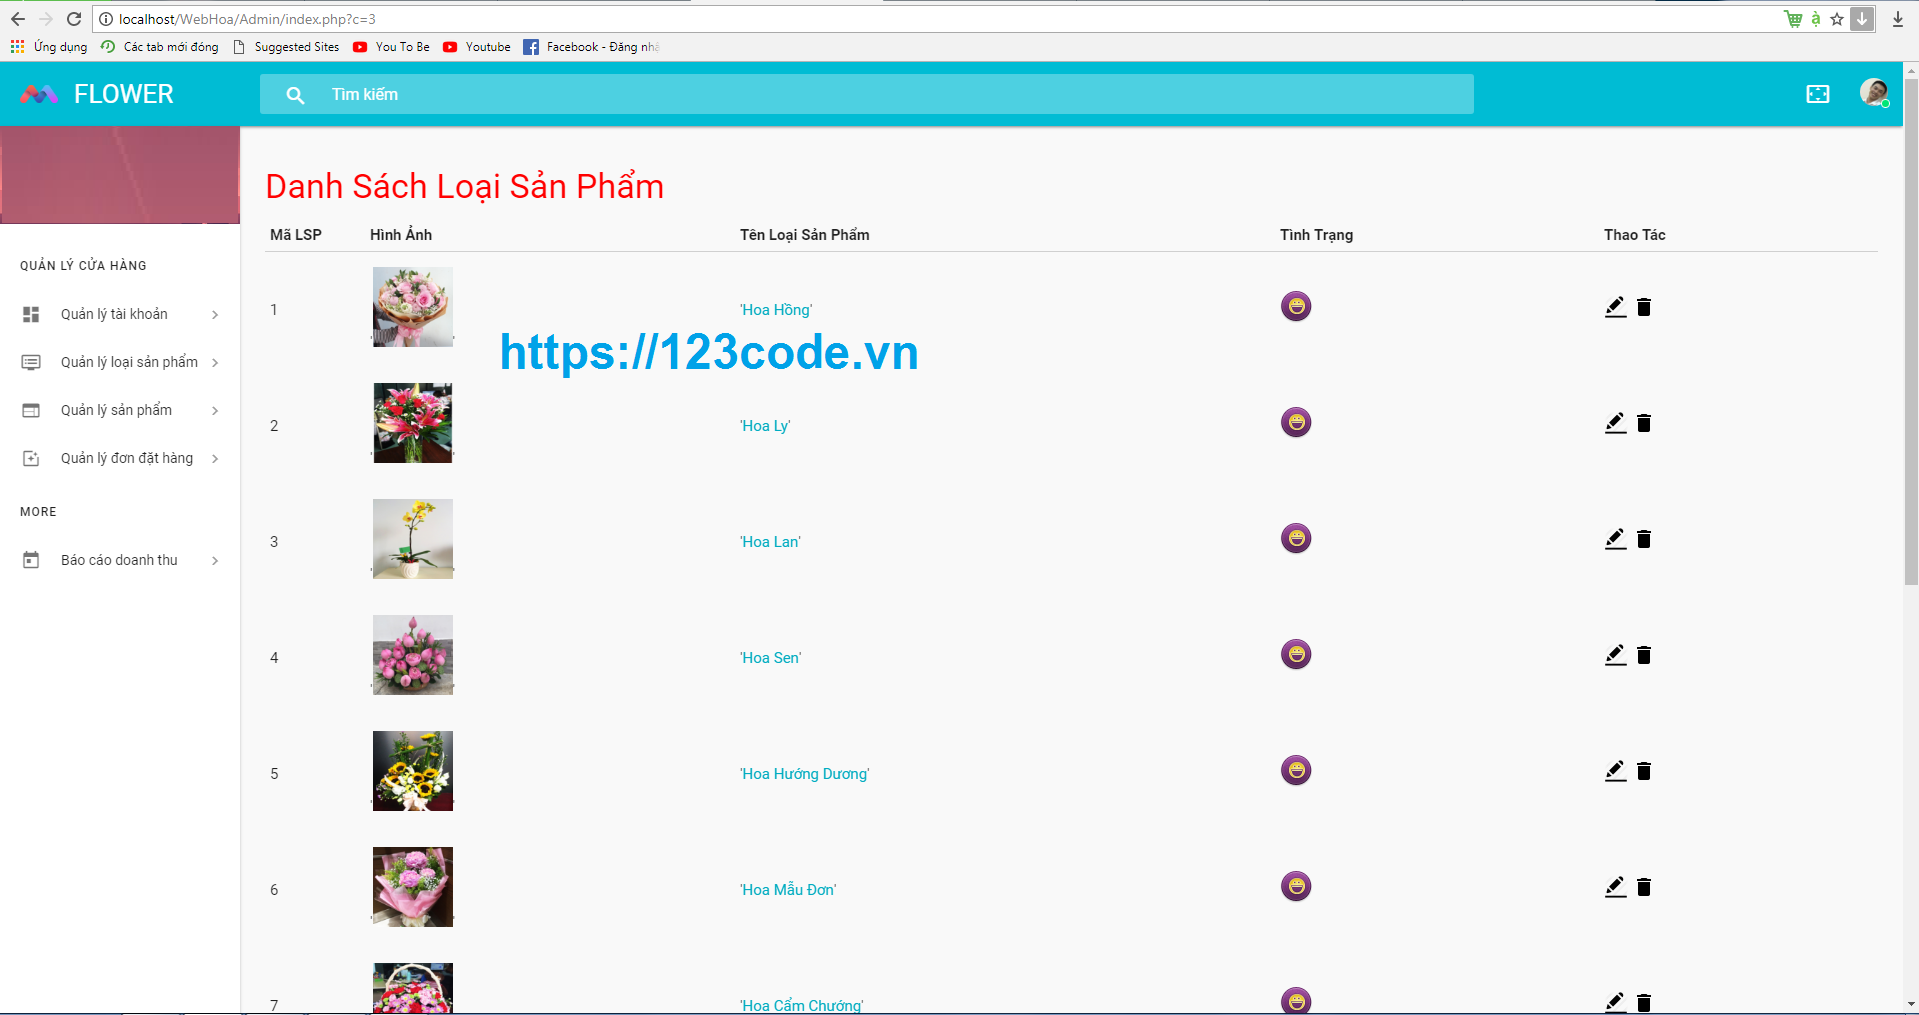 Tải full source code website bán hàng php thuần hoàn chỉnh cực đẹp